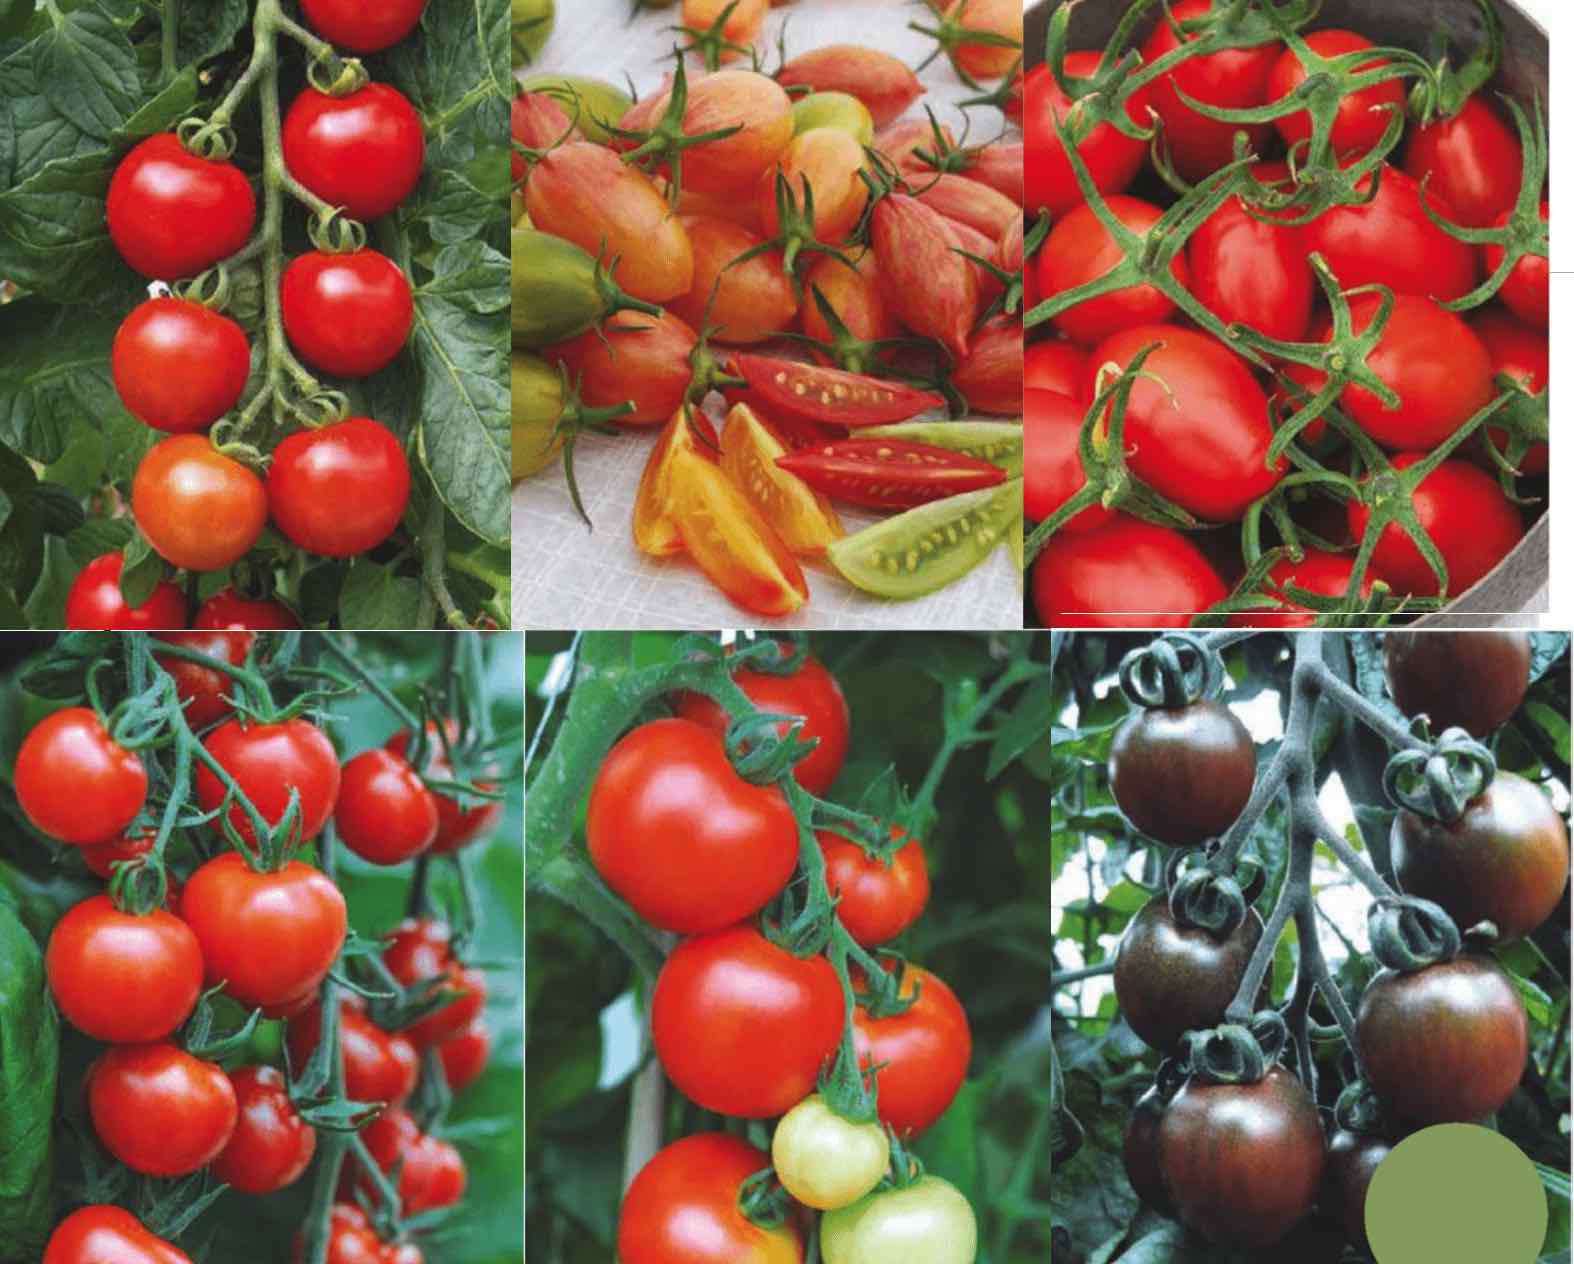 Выбор лучших сортов томатов для теплиц из поликарбоната.